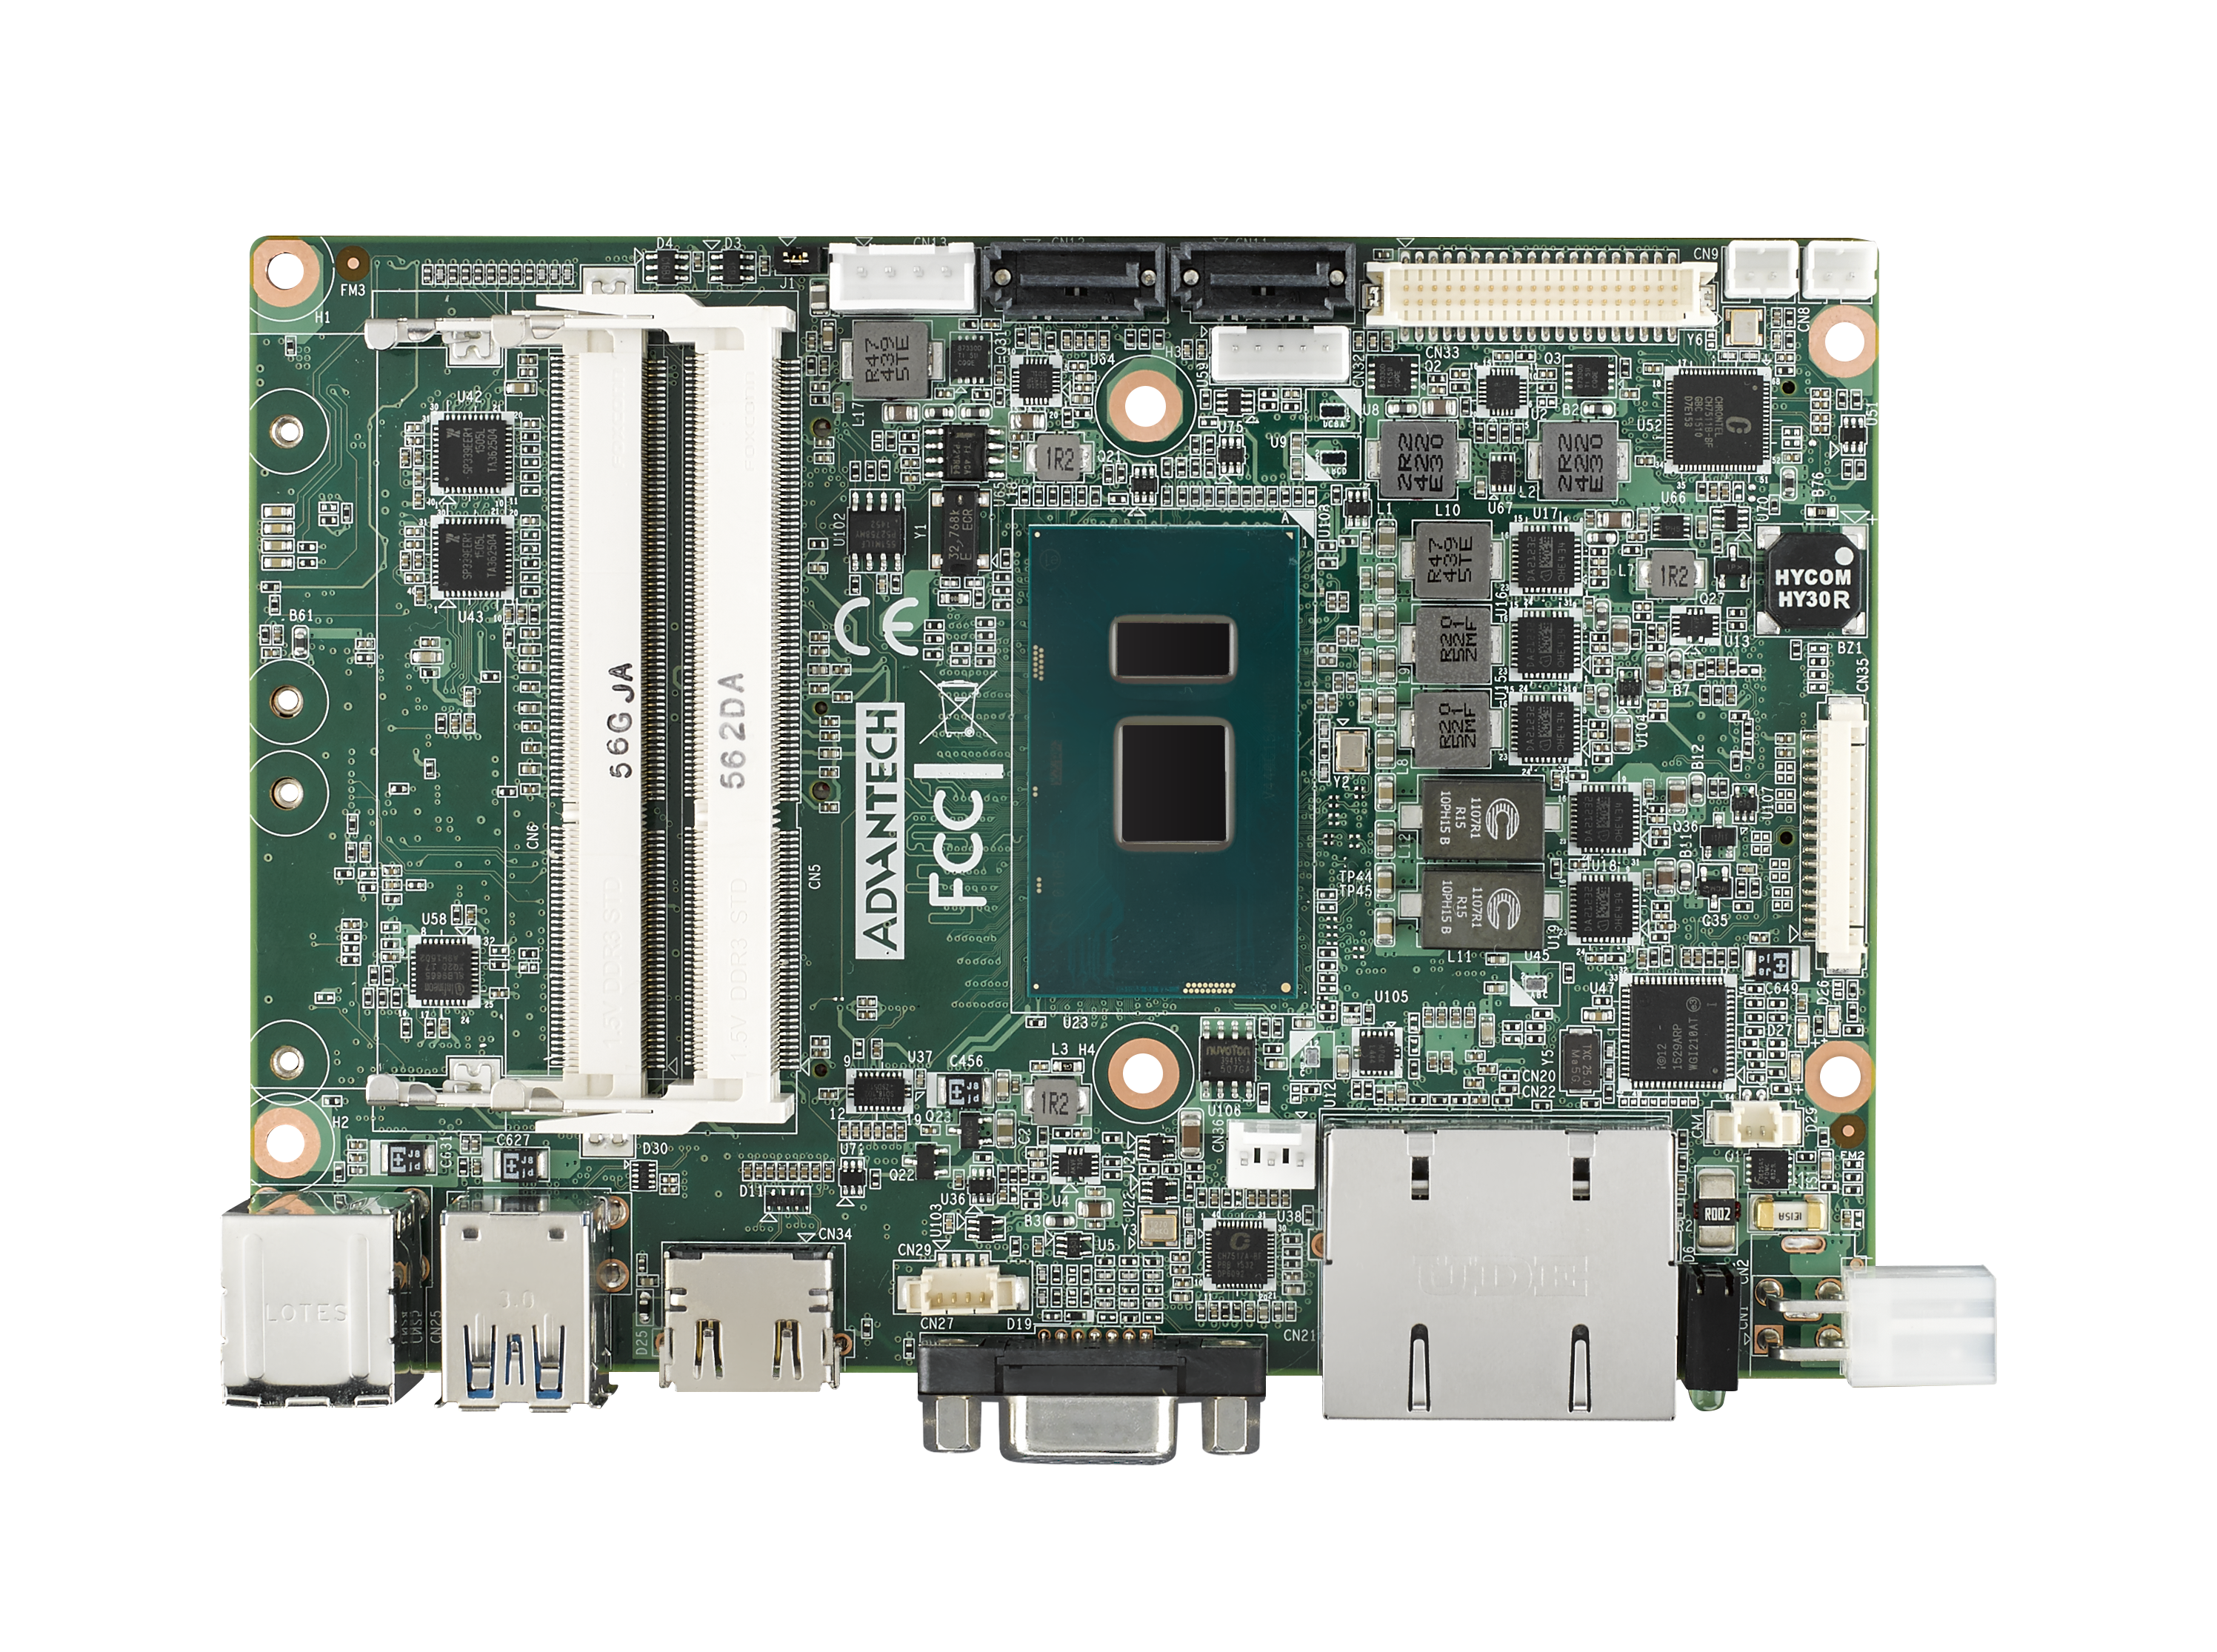 6th Gen i7 6600U 3.5” Compact SBC with DDR3L, VGA, HDMI, 48-bit LVDS, 2 GbE, 
2 Mini PCIe, mSATA, Fanless, MIOe